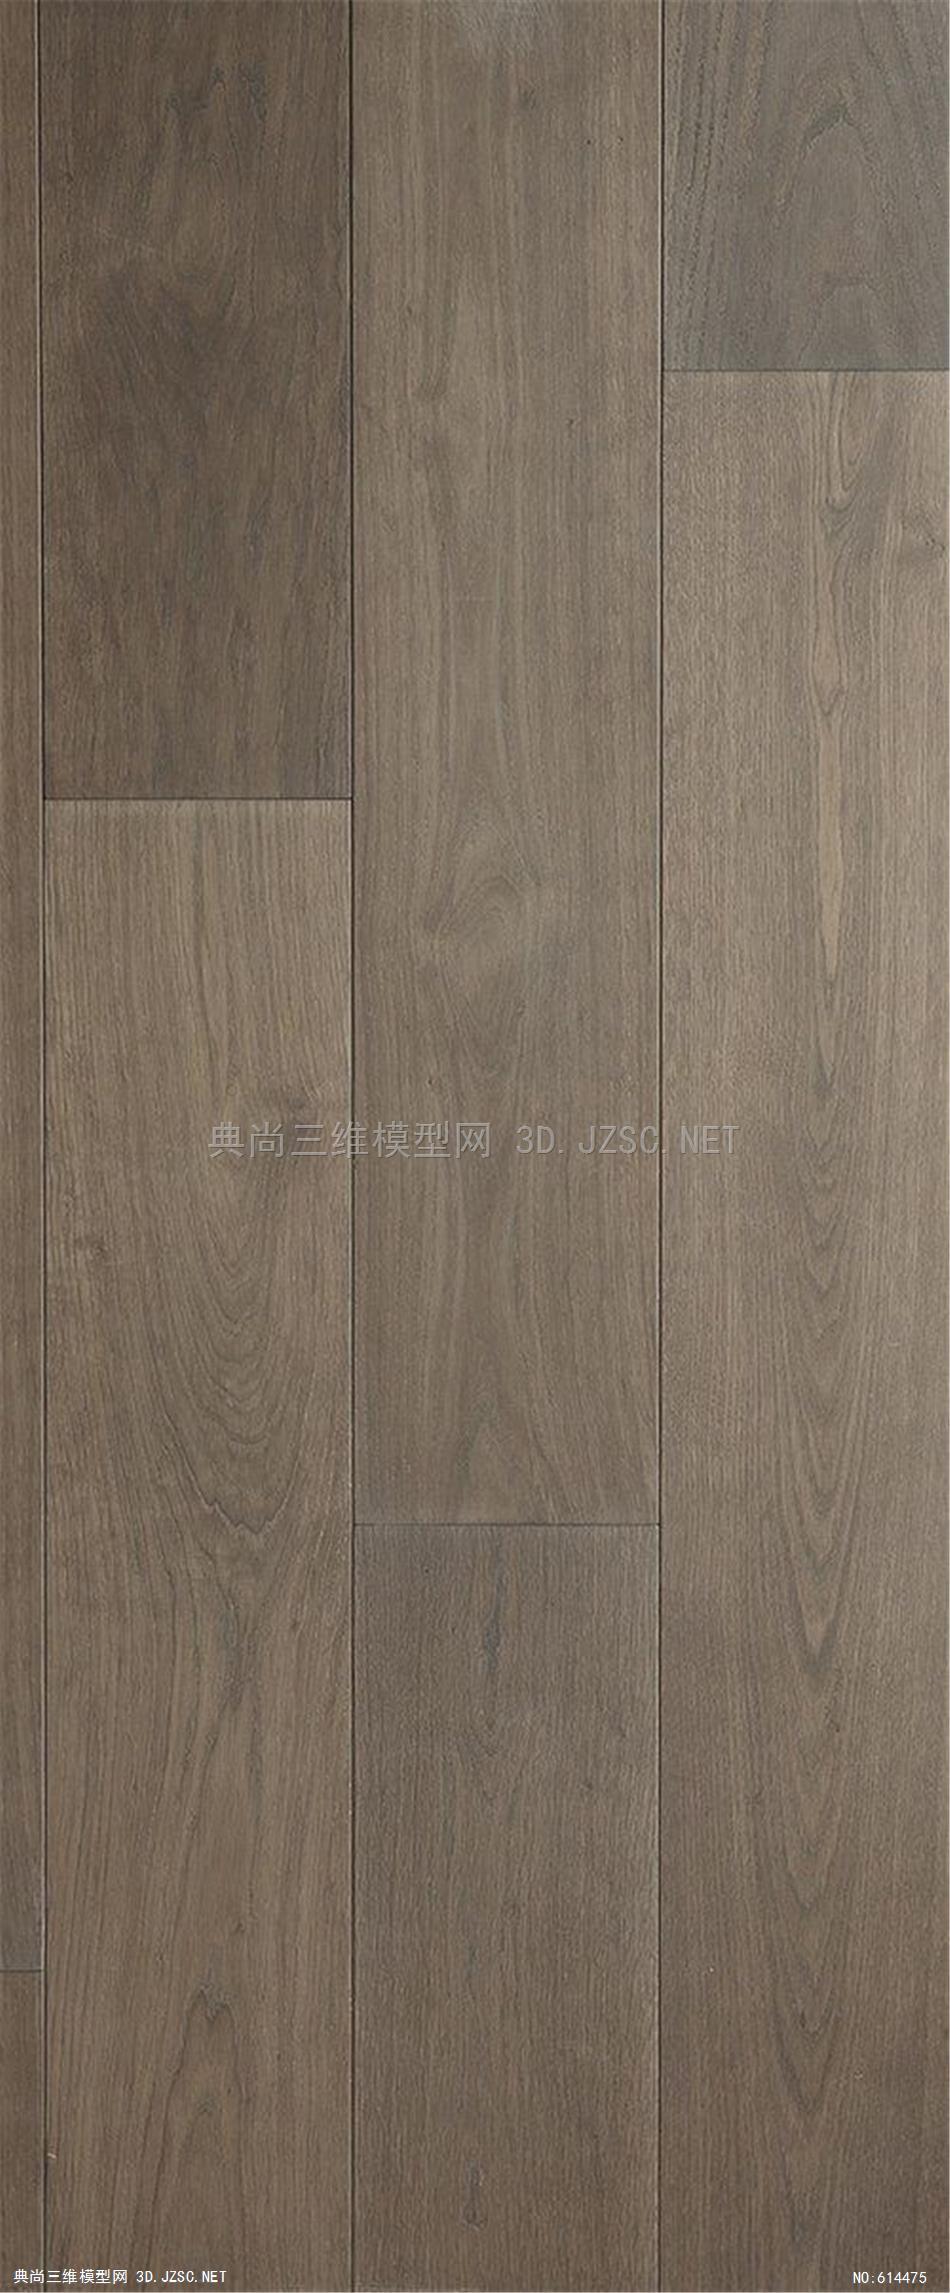 木饰面 木纹 木材  高清材质贴图 (317)